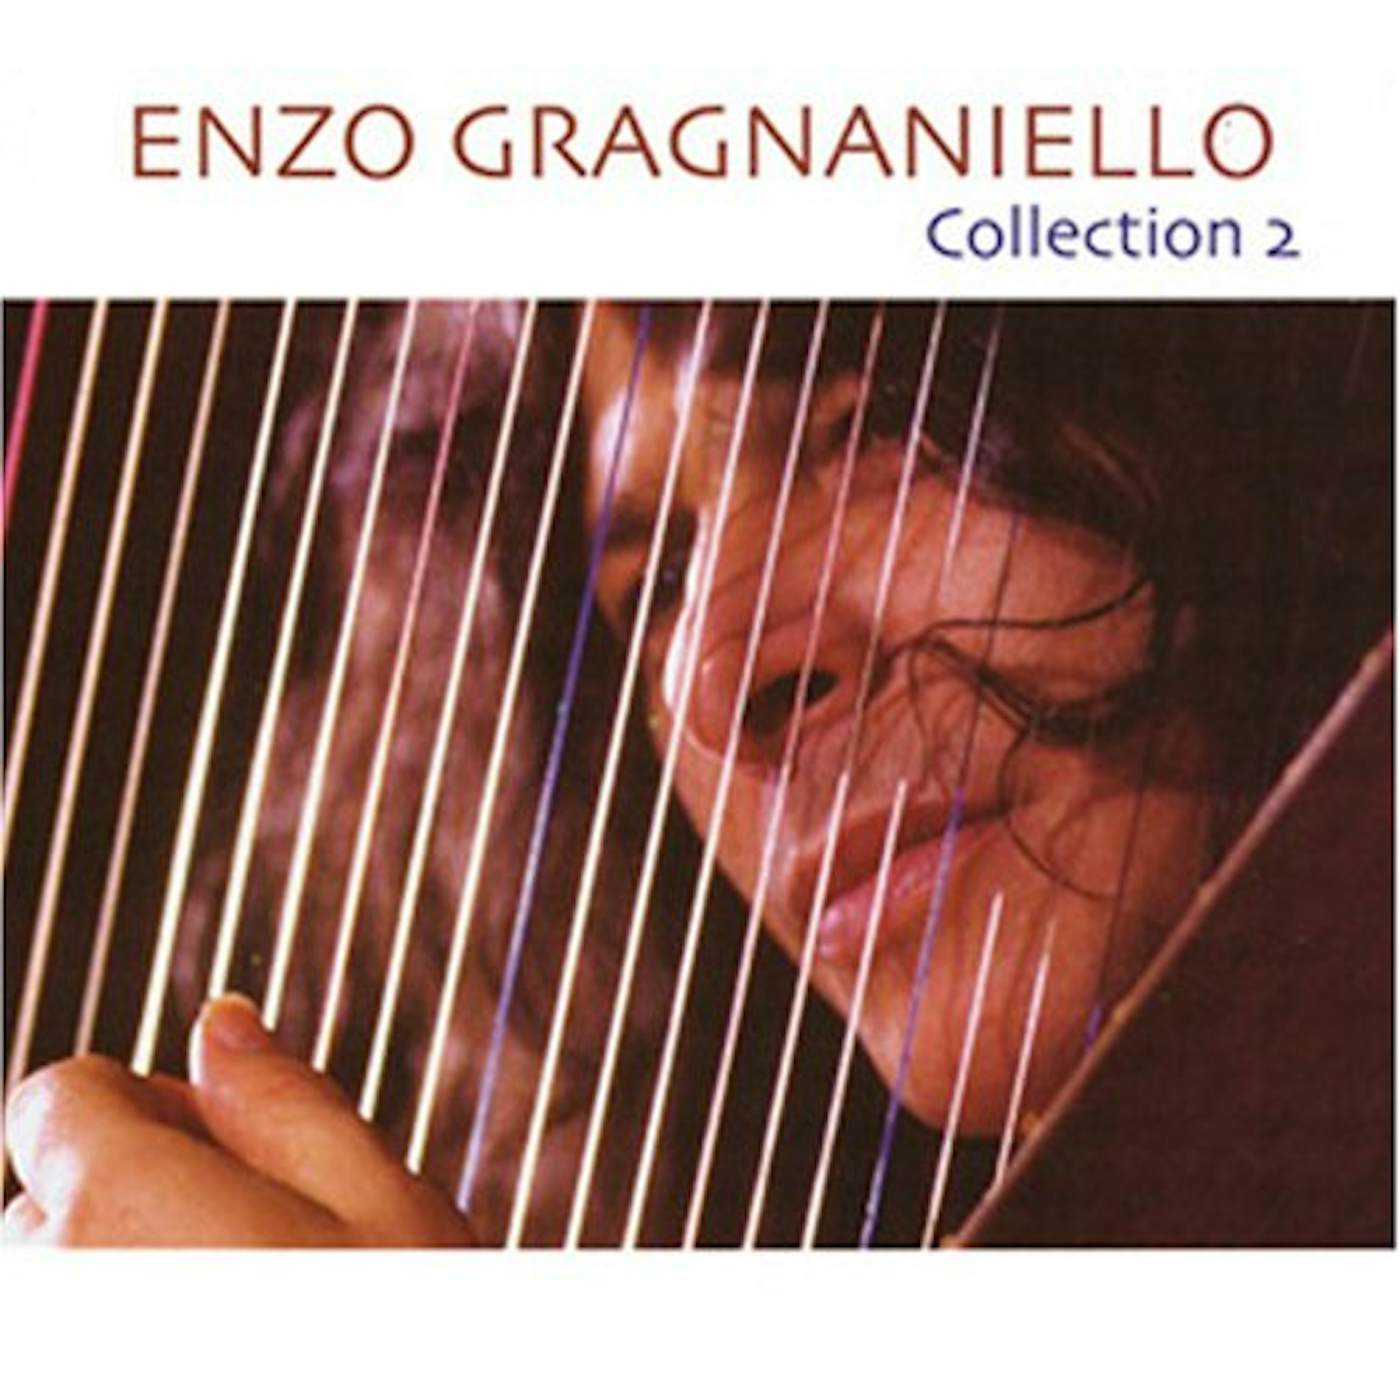 Enzo Gragnaniello COLLECTION 2 CD